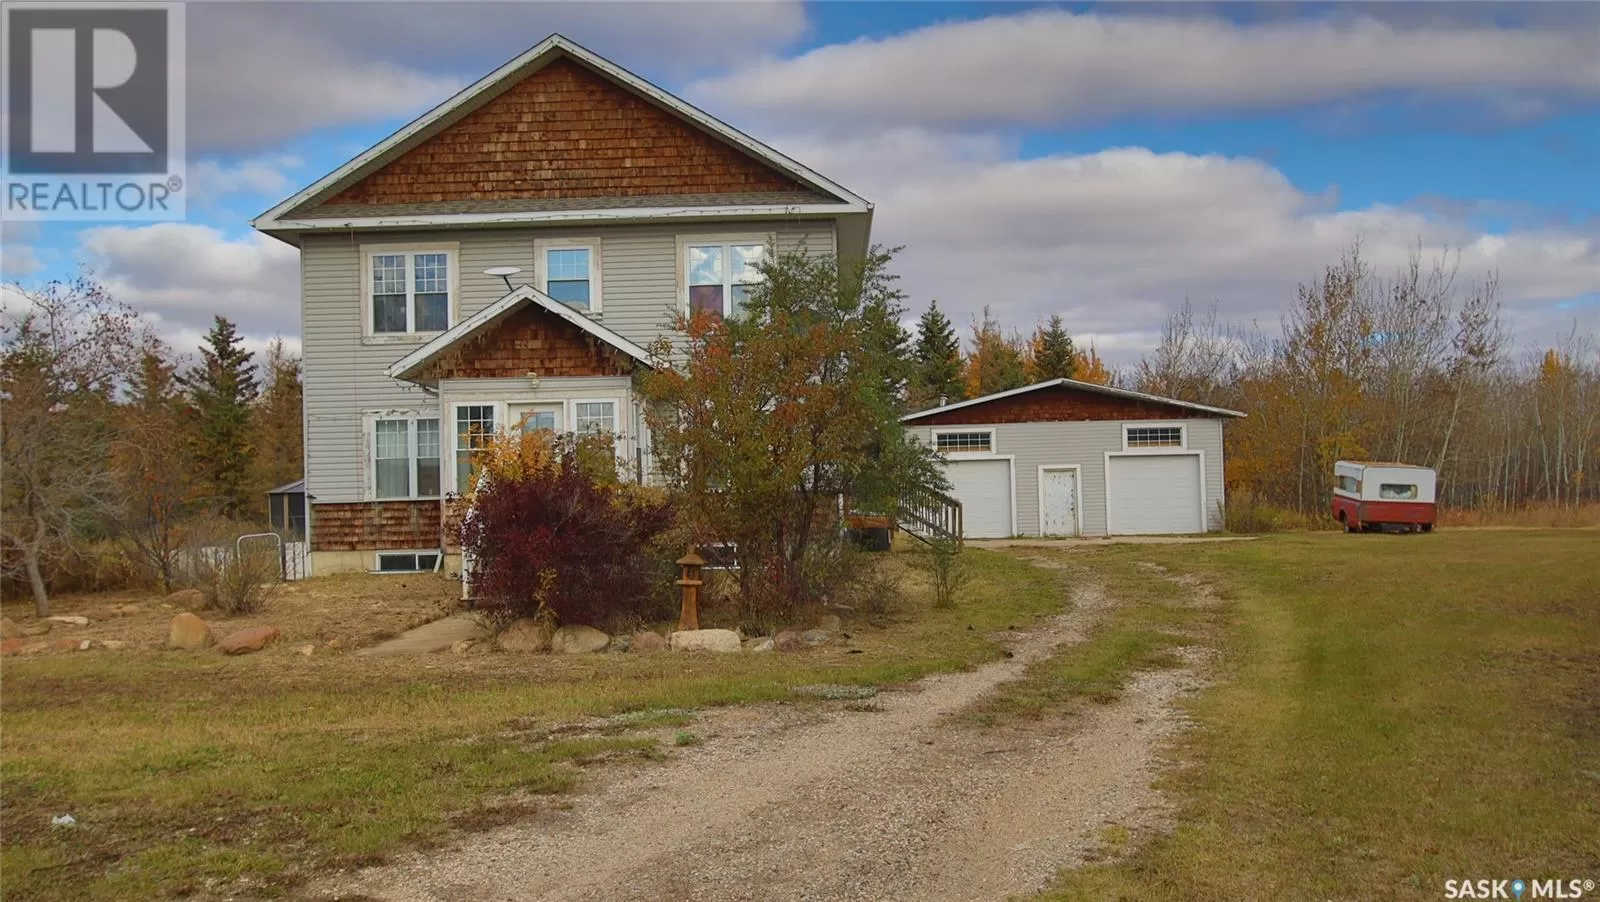 House for rent: Cockcroft Acreage, Laird Rm No. 404, Saskatchewan S0K 4R0